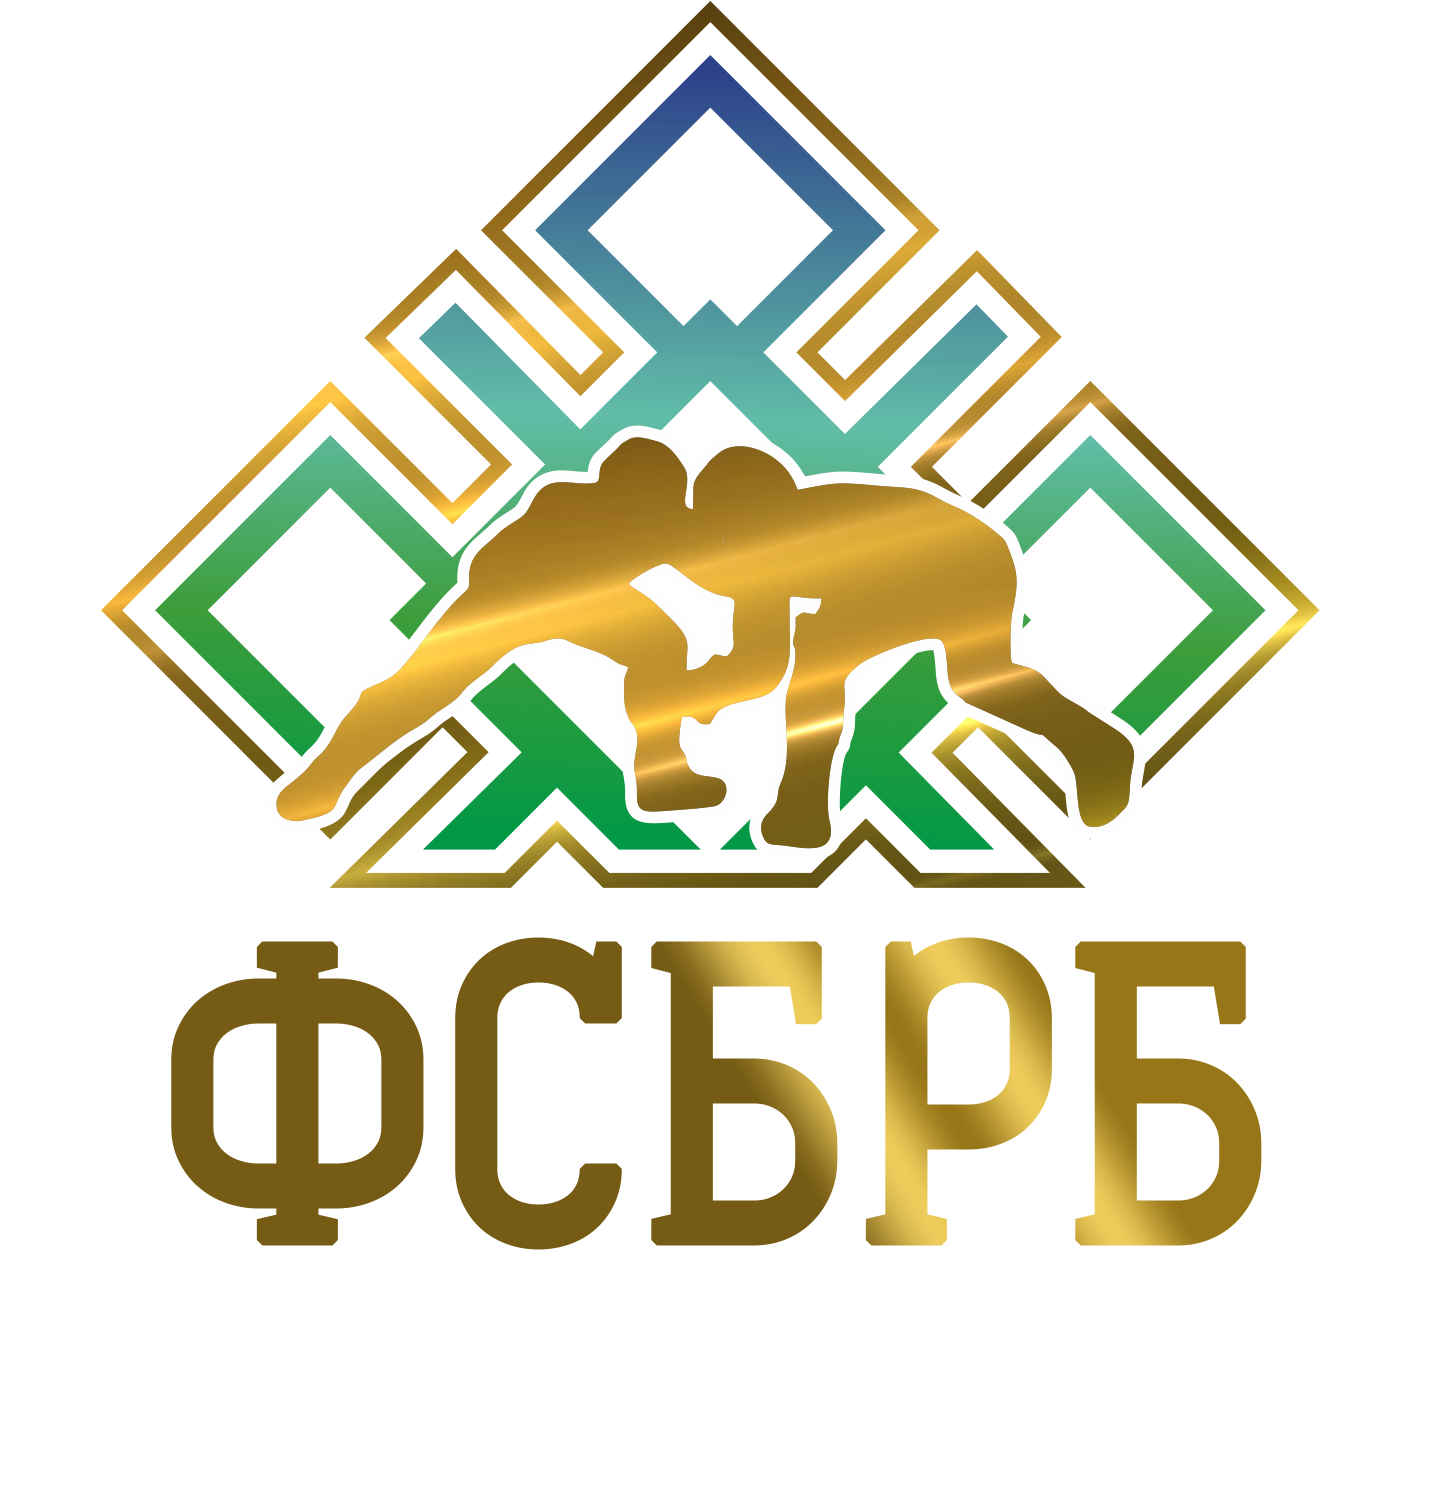 Федерация спортивной борьбы Республики Башкортостан